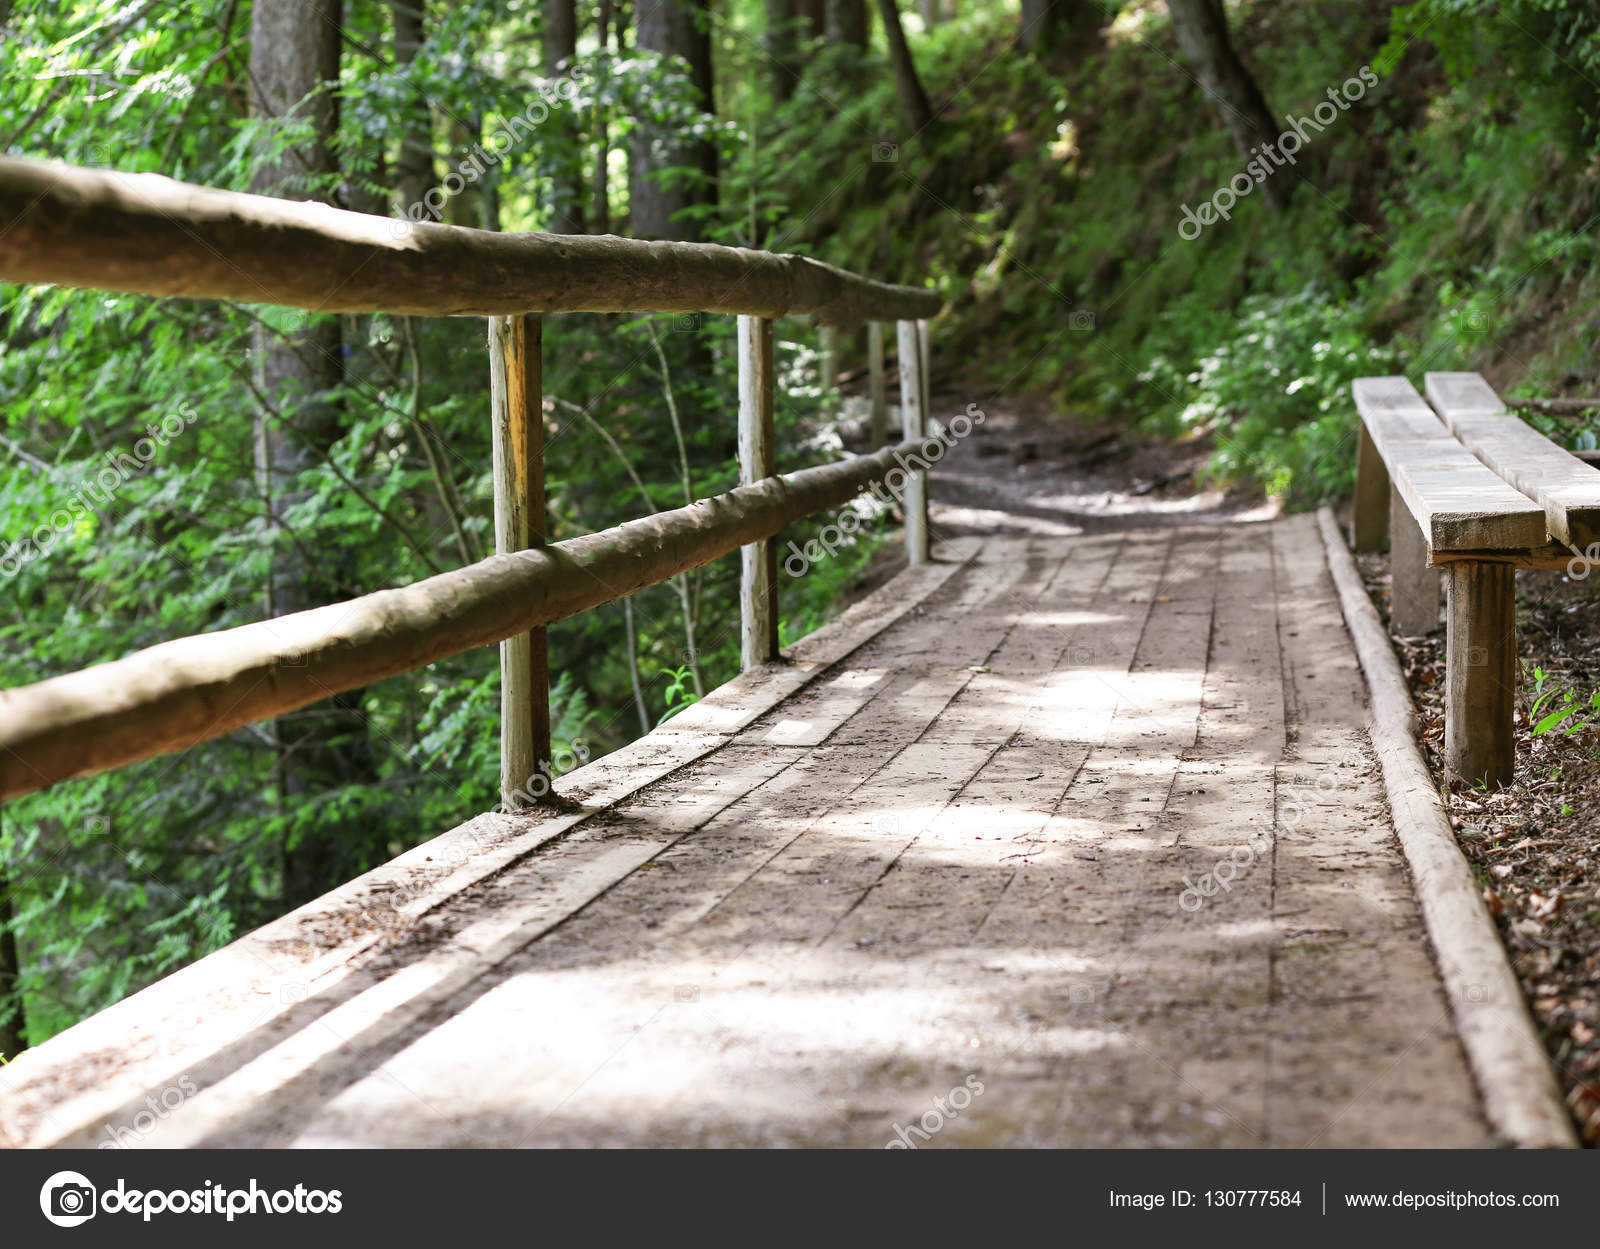 Wooden bridge in forest — Stock Photo © belchonock #130777584